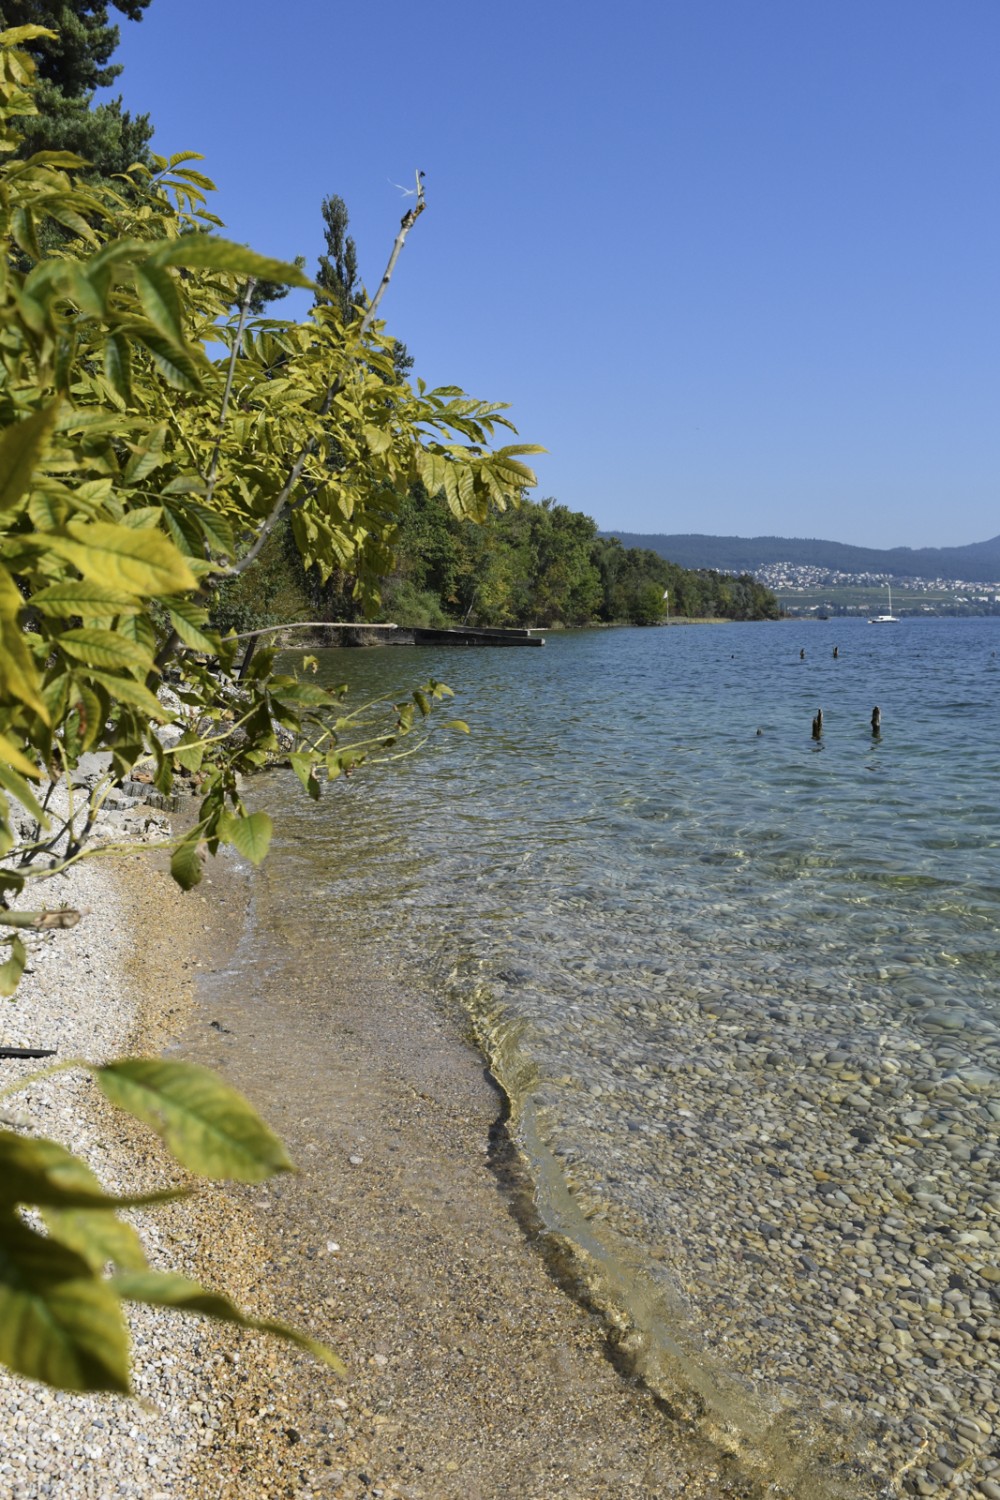 Ambiance de vacances au bord du lac de Neuchâtel. Photo: Nathalie Stöckli
